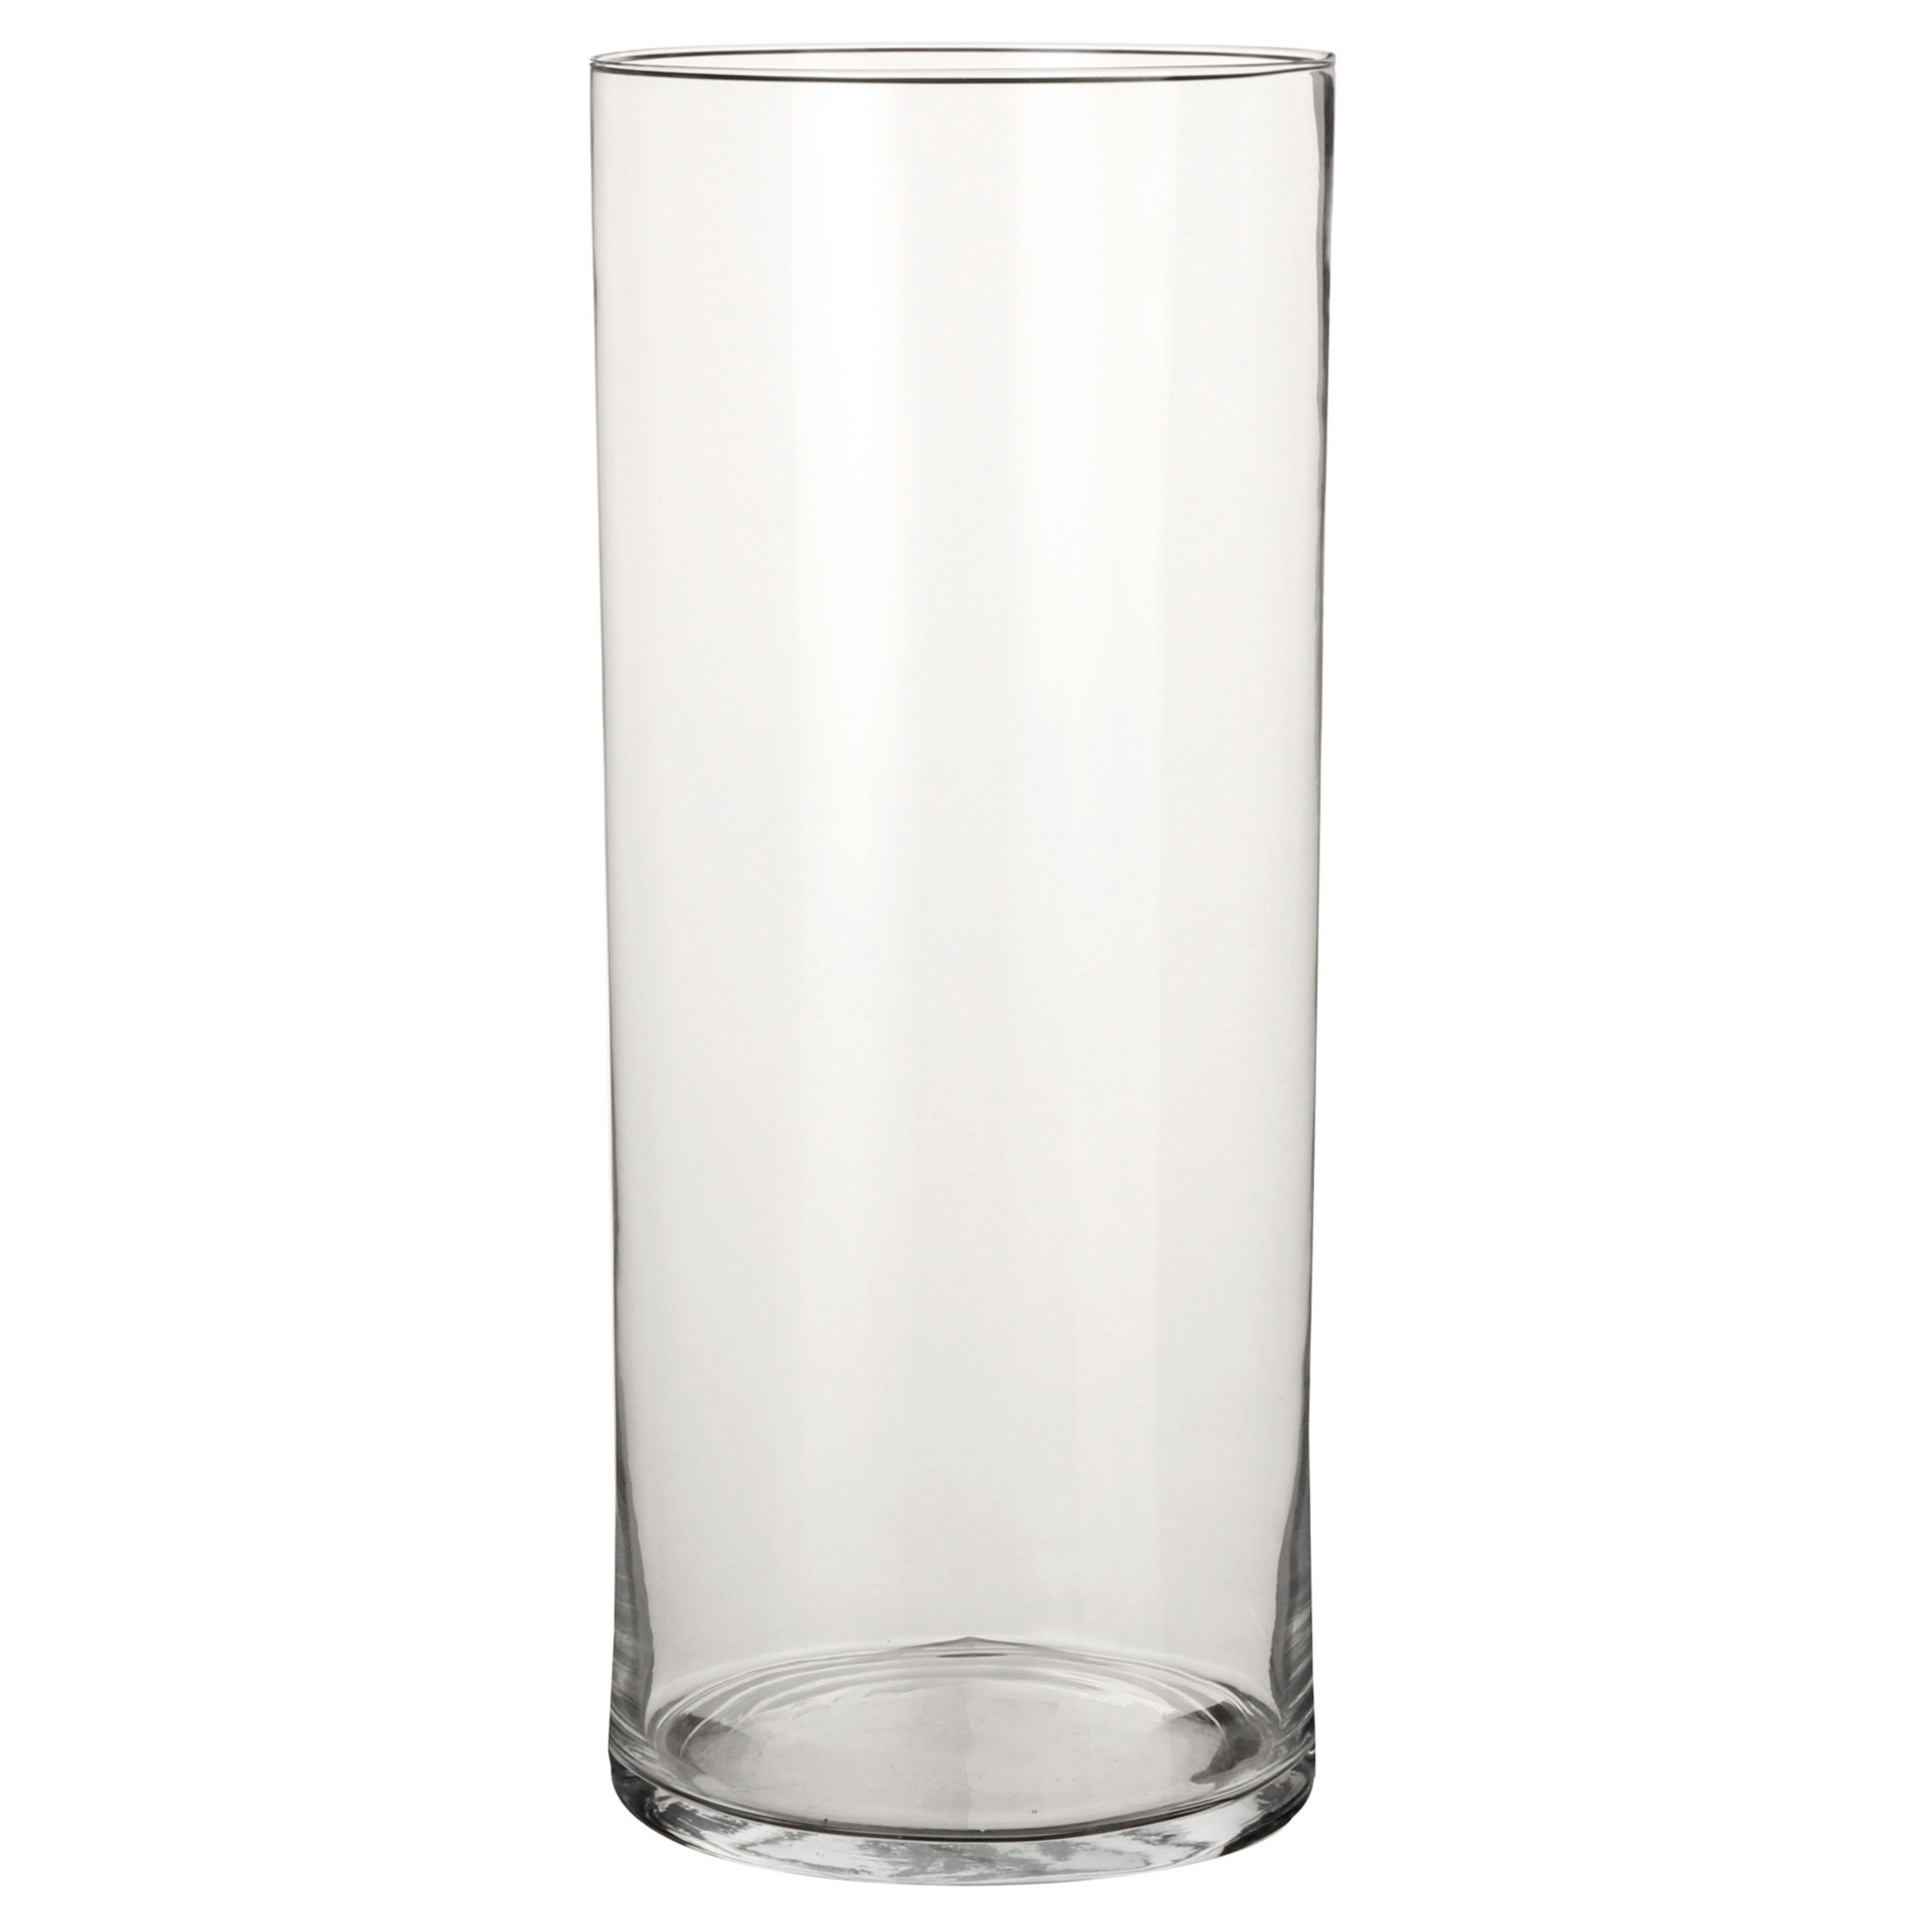 1x Glazen cilinder vaas-vazen 48 cm rond